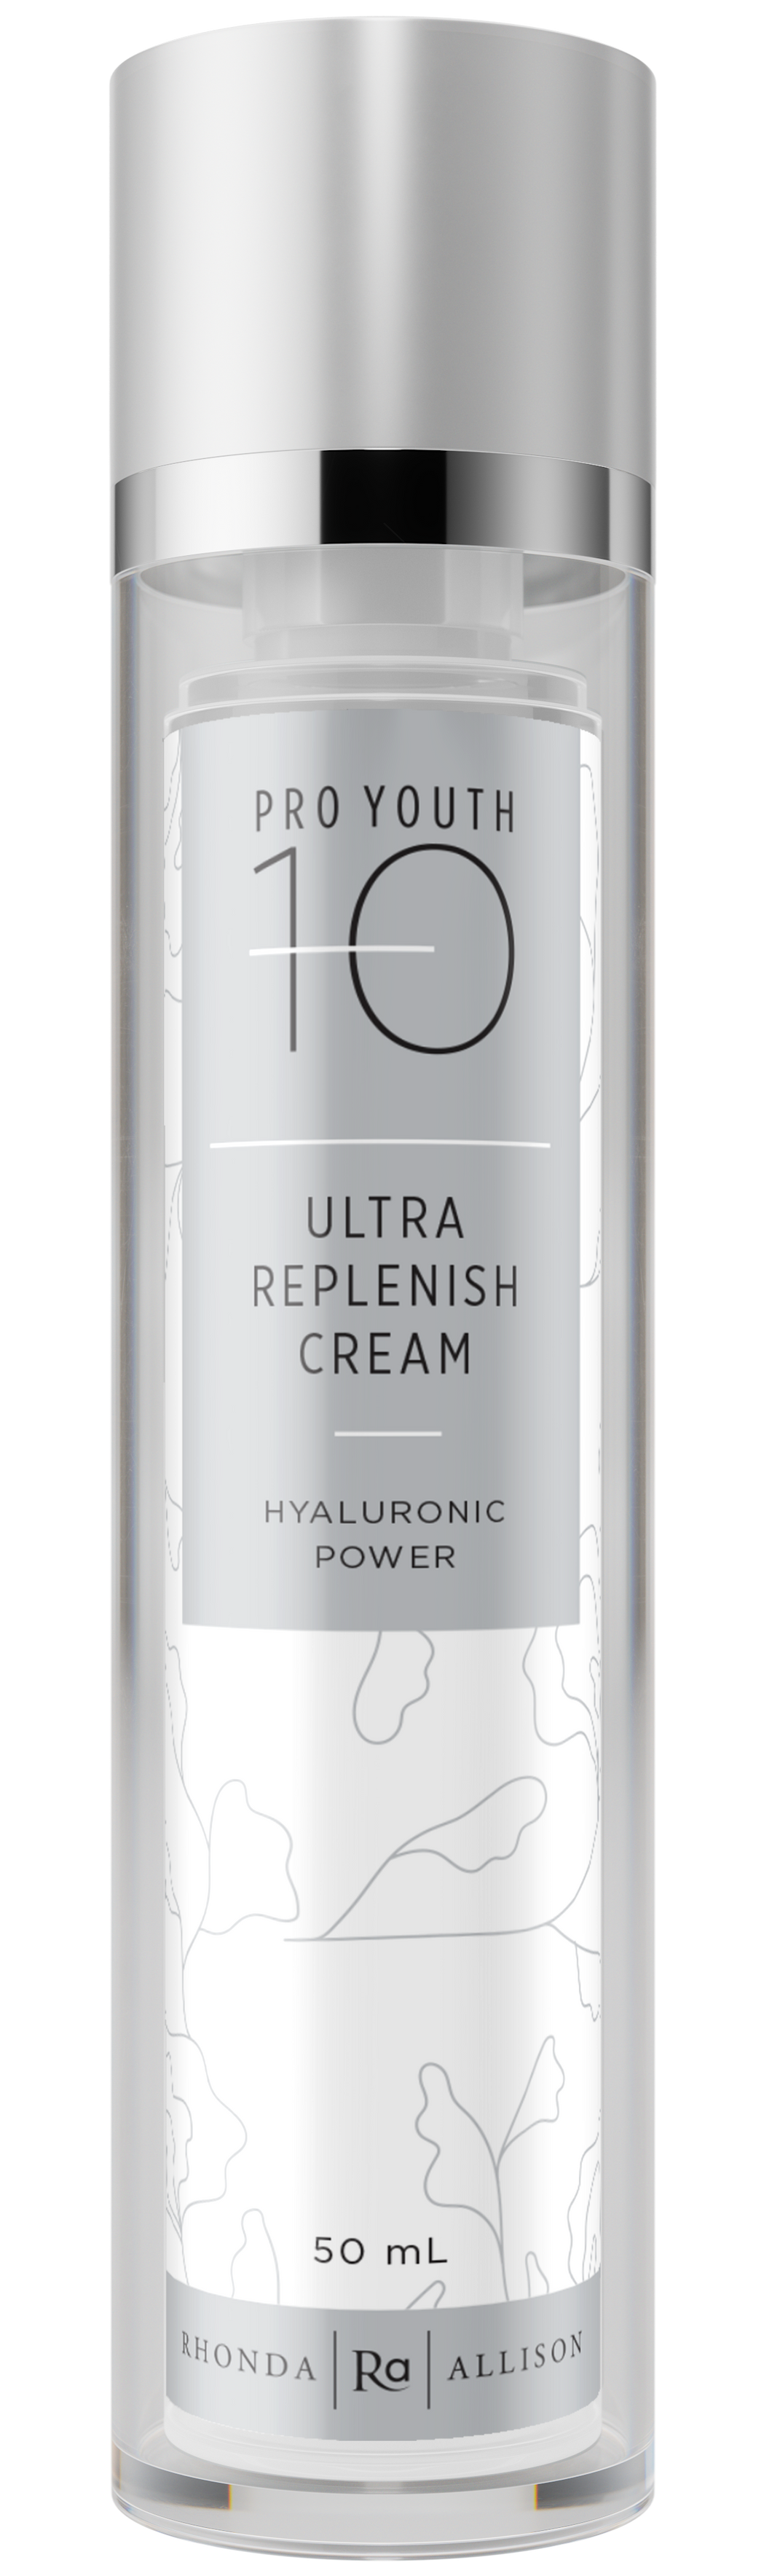 Ultra Replenish Cream - 50 mL